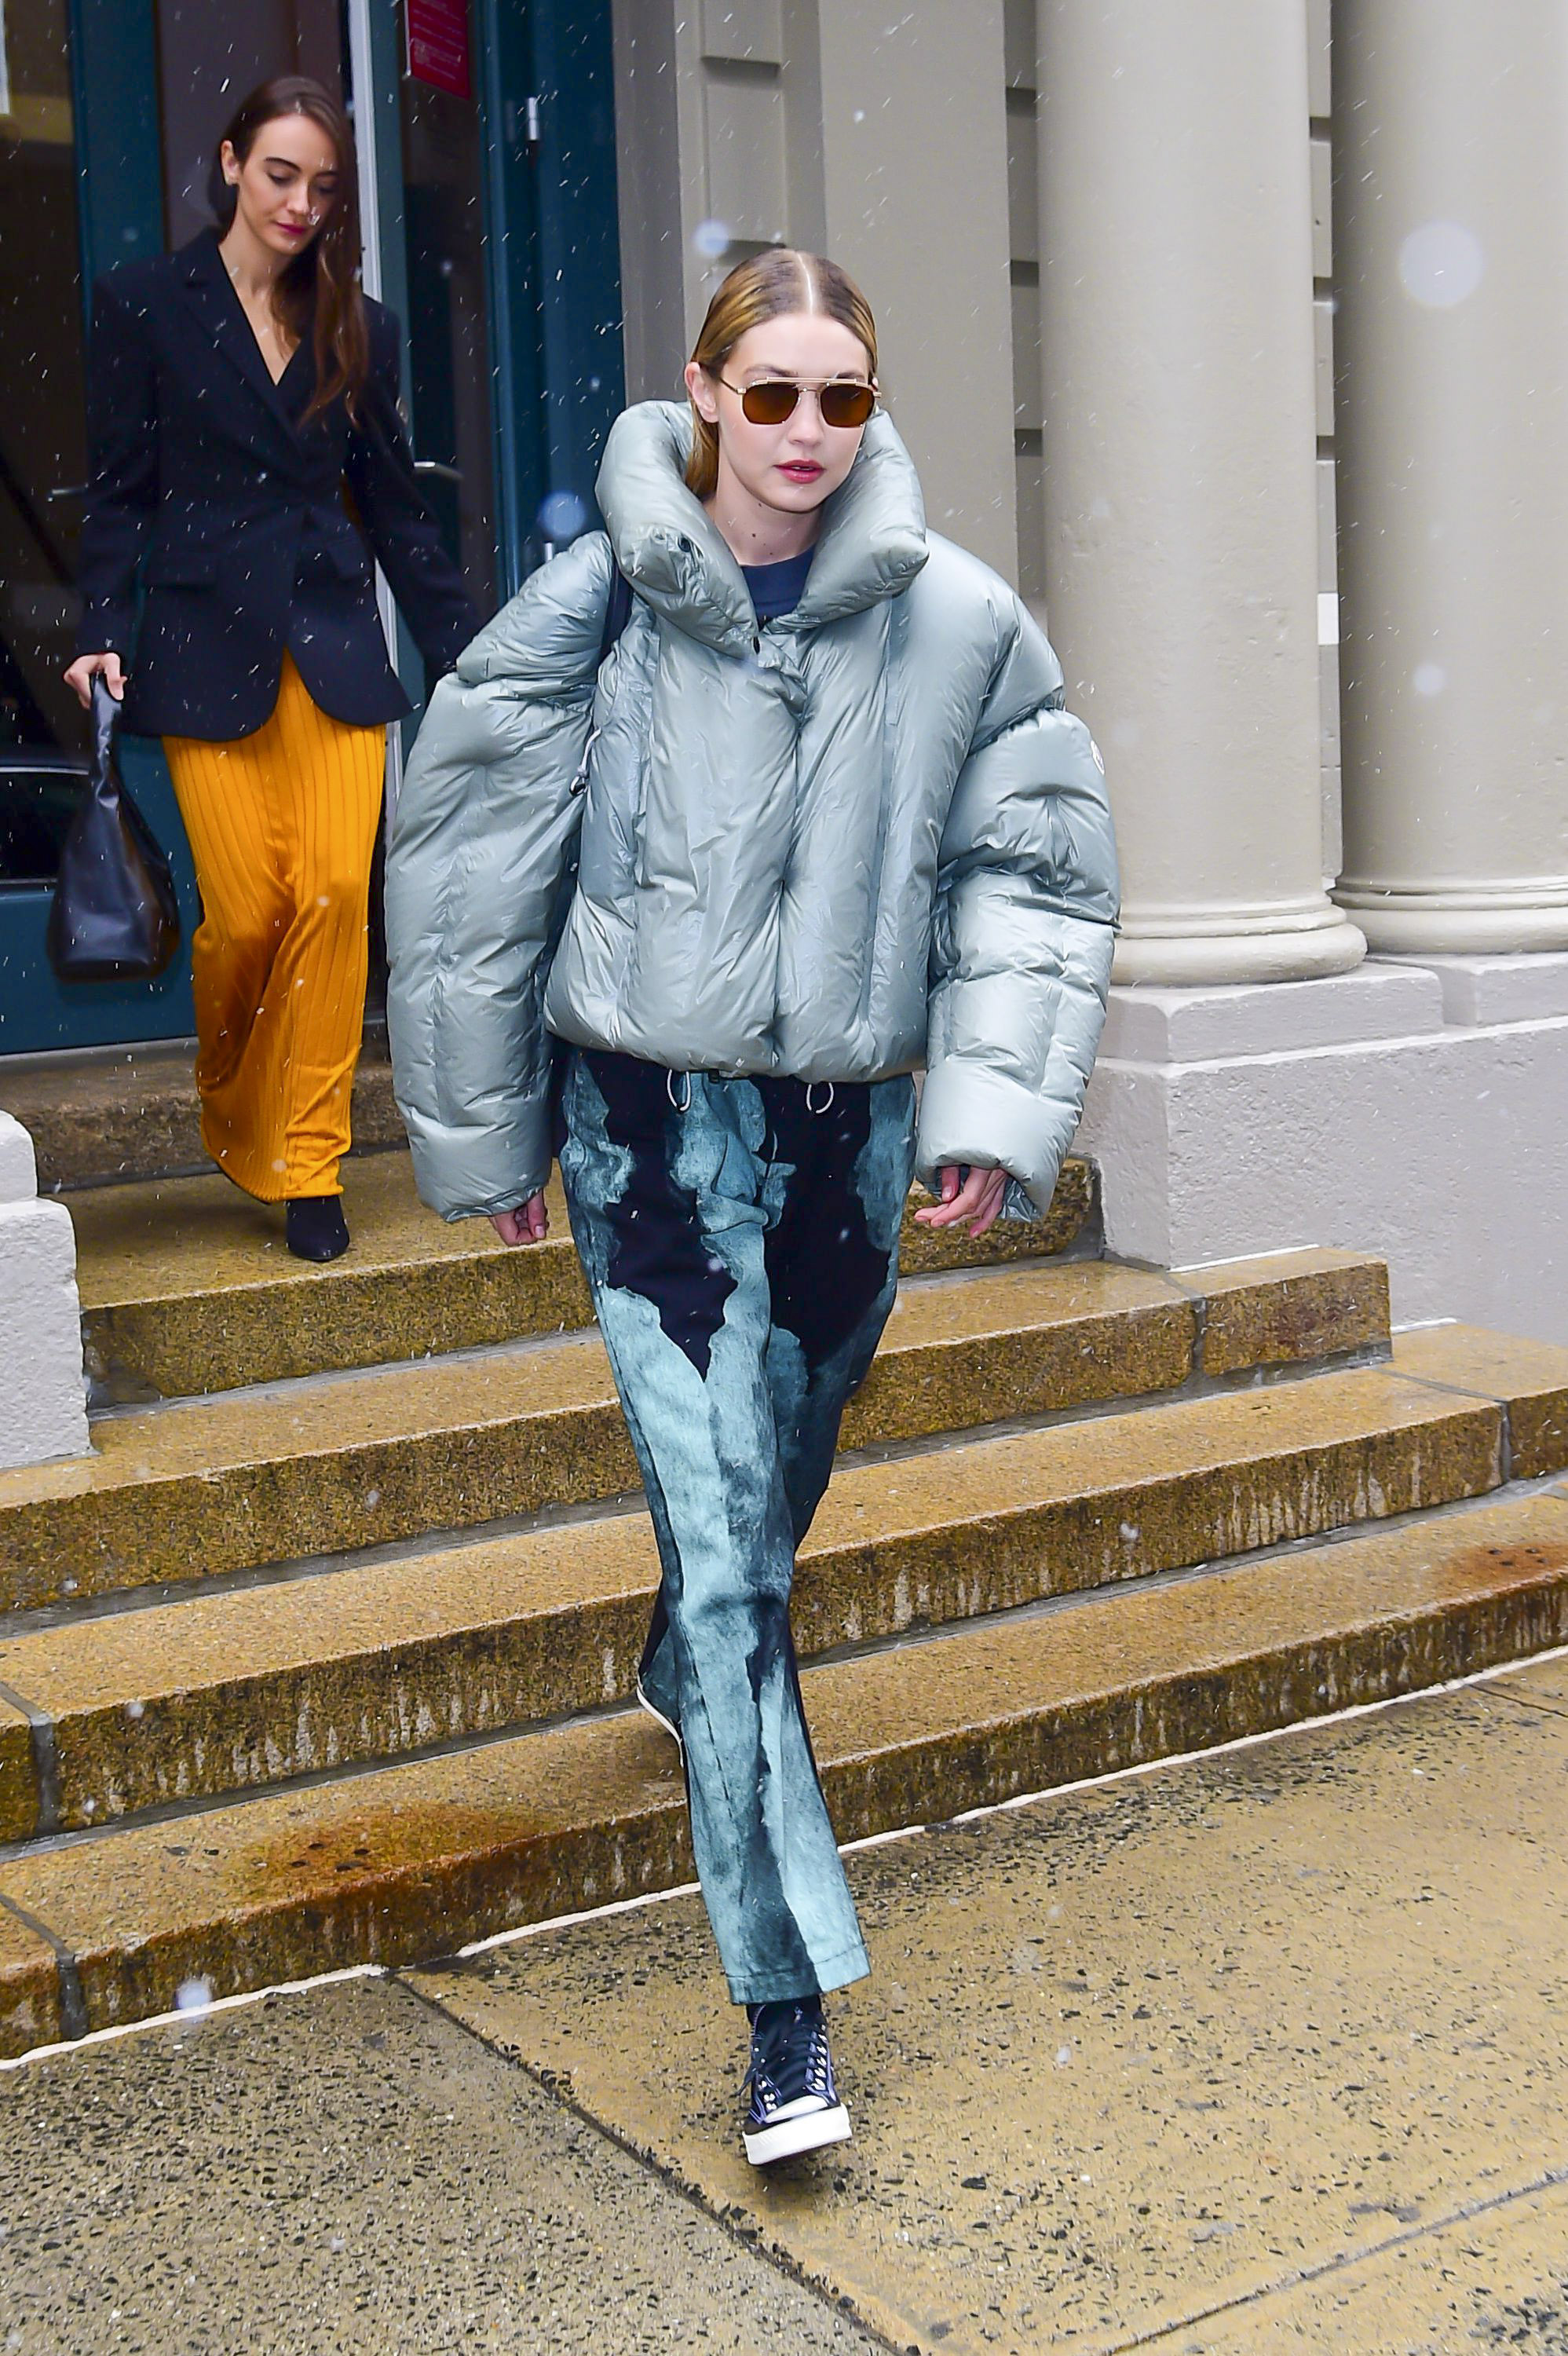 Gigi Hadid asistió al New York Fashion Week y marcó tendencia con su look: lució un pantalón de jean intervenido en la gama del azul y una campera de pluma color celeste